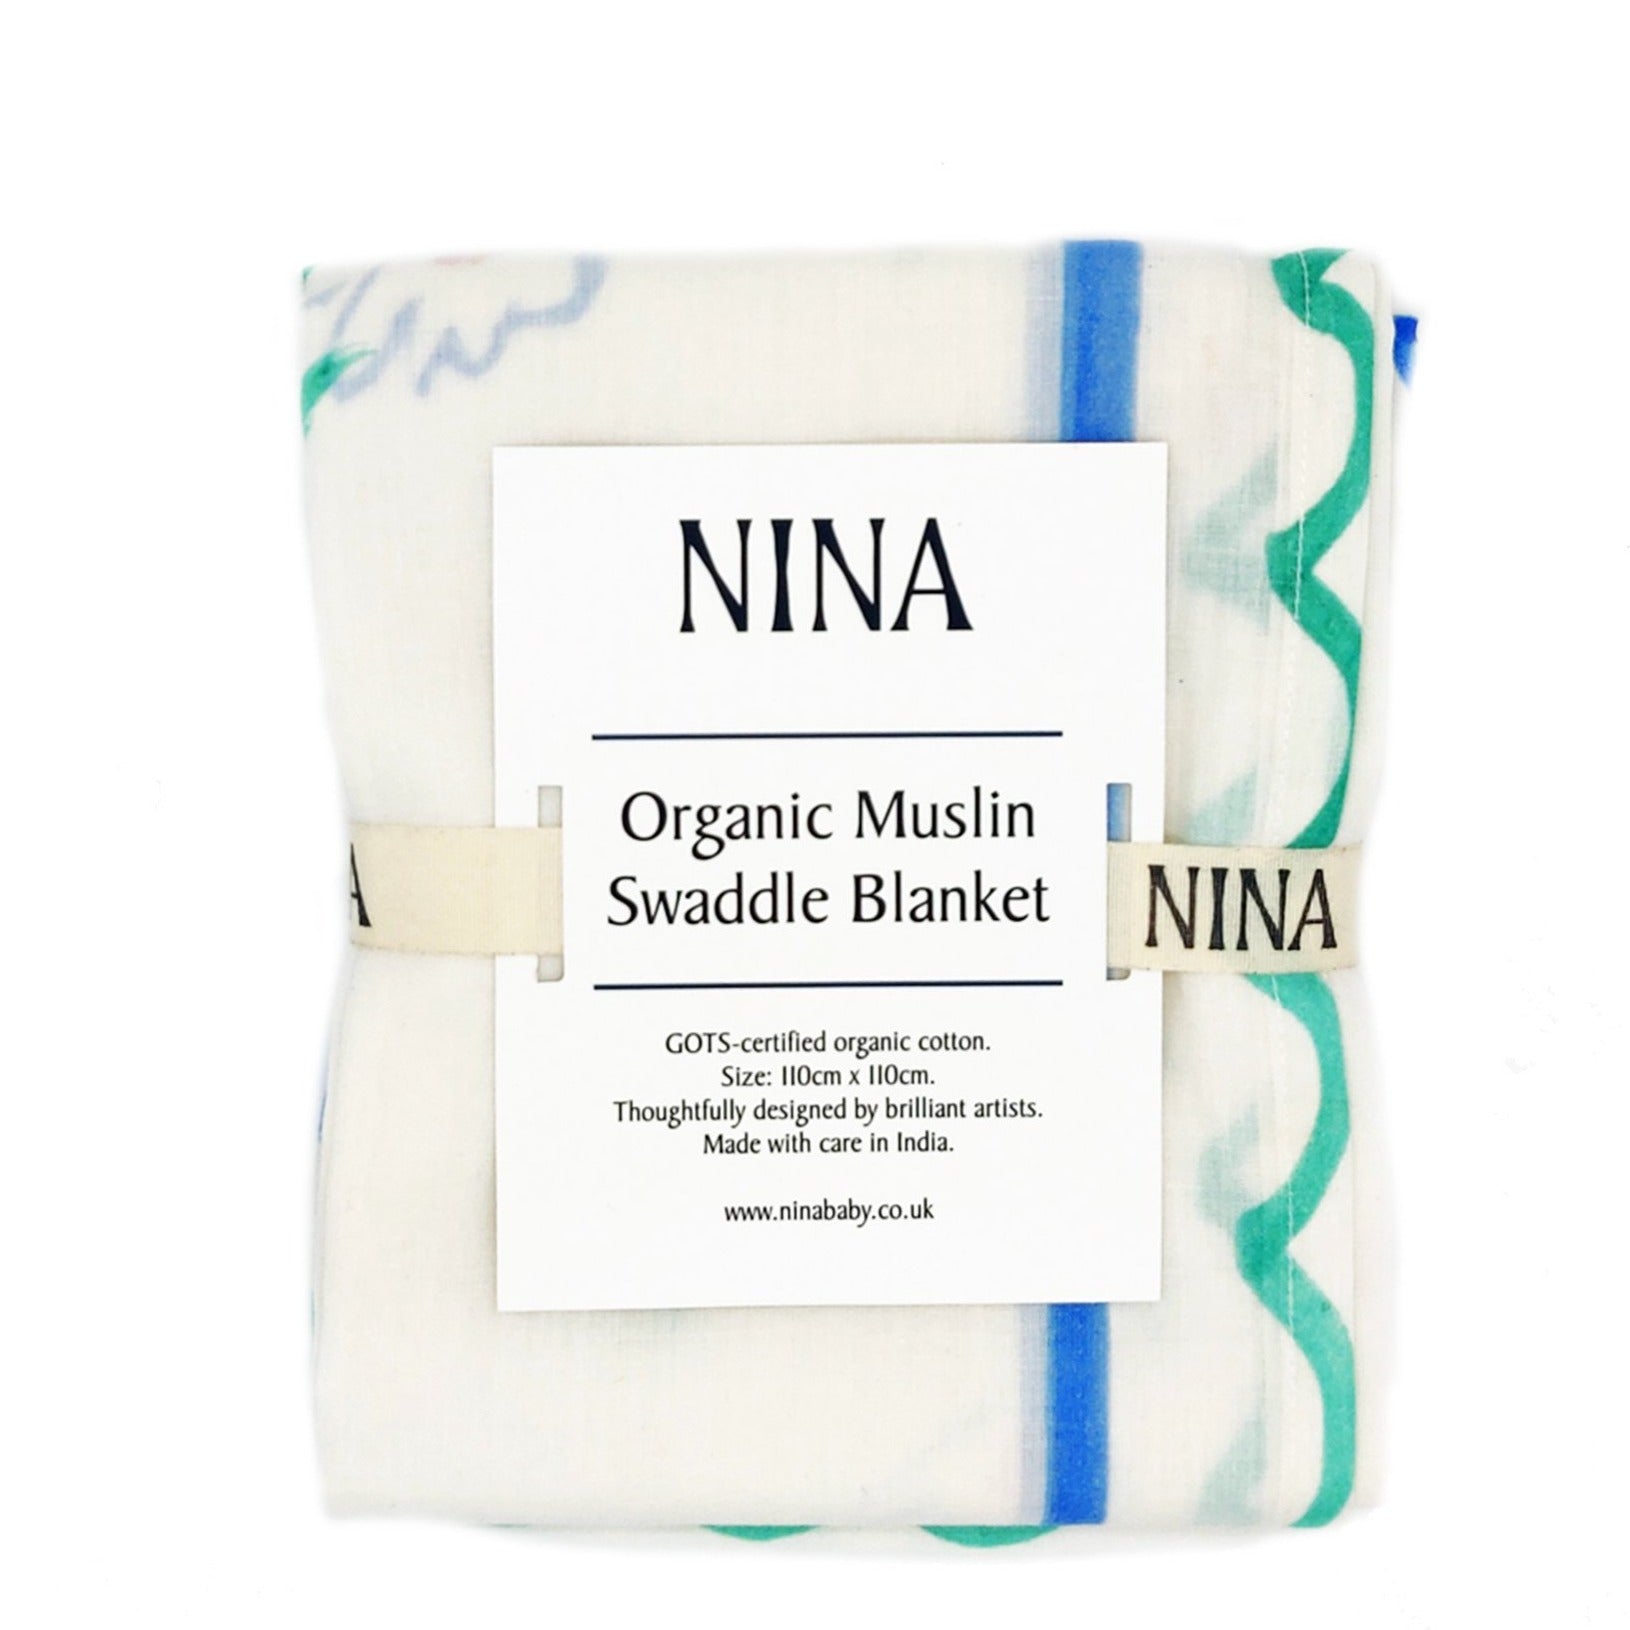 Organic muslin swaddle blanket in packaging